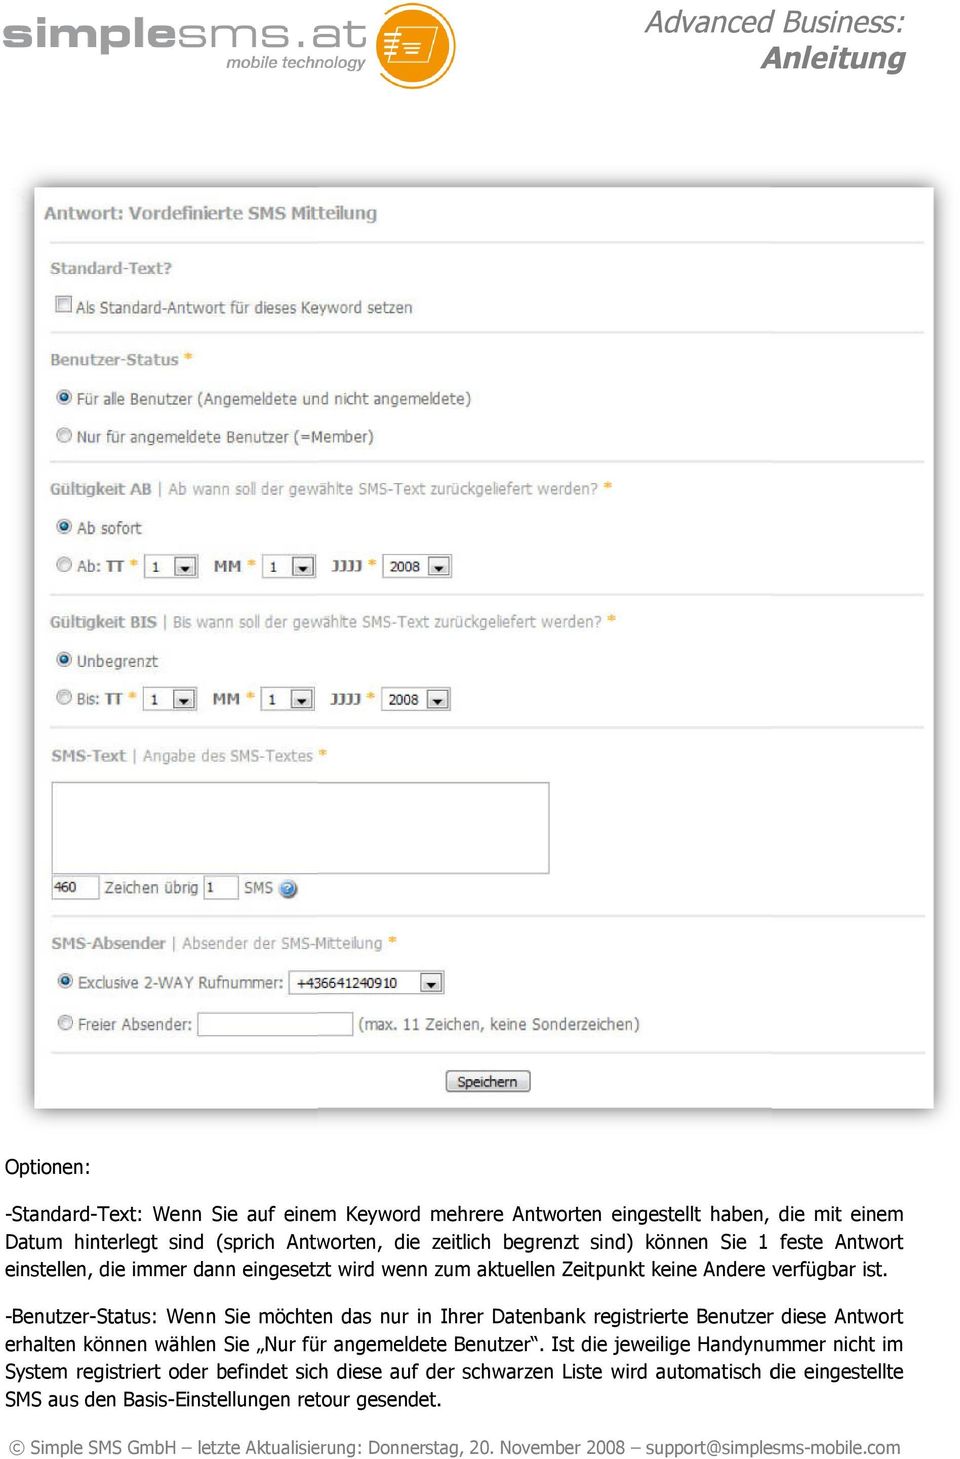 -Benutzer-Status: Status: Wenn Sie möchten das nur in Ihrer Datenbank registrierte Benutzer diese Antwort erhalten können wählen Sie Nur für angemeldete Benutzer.